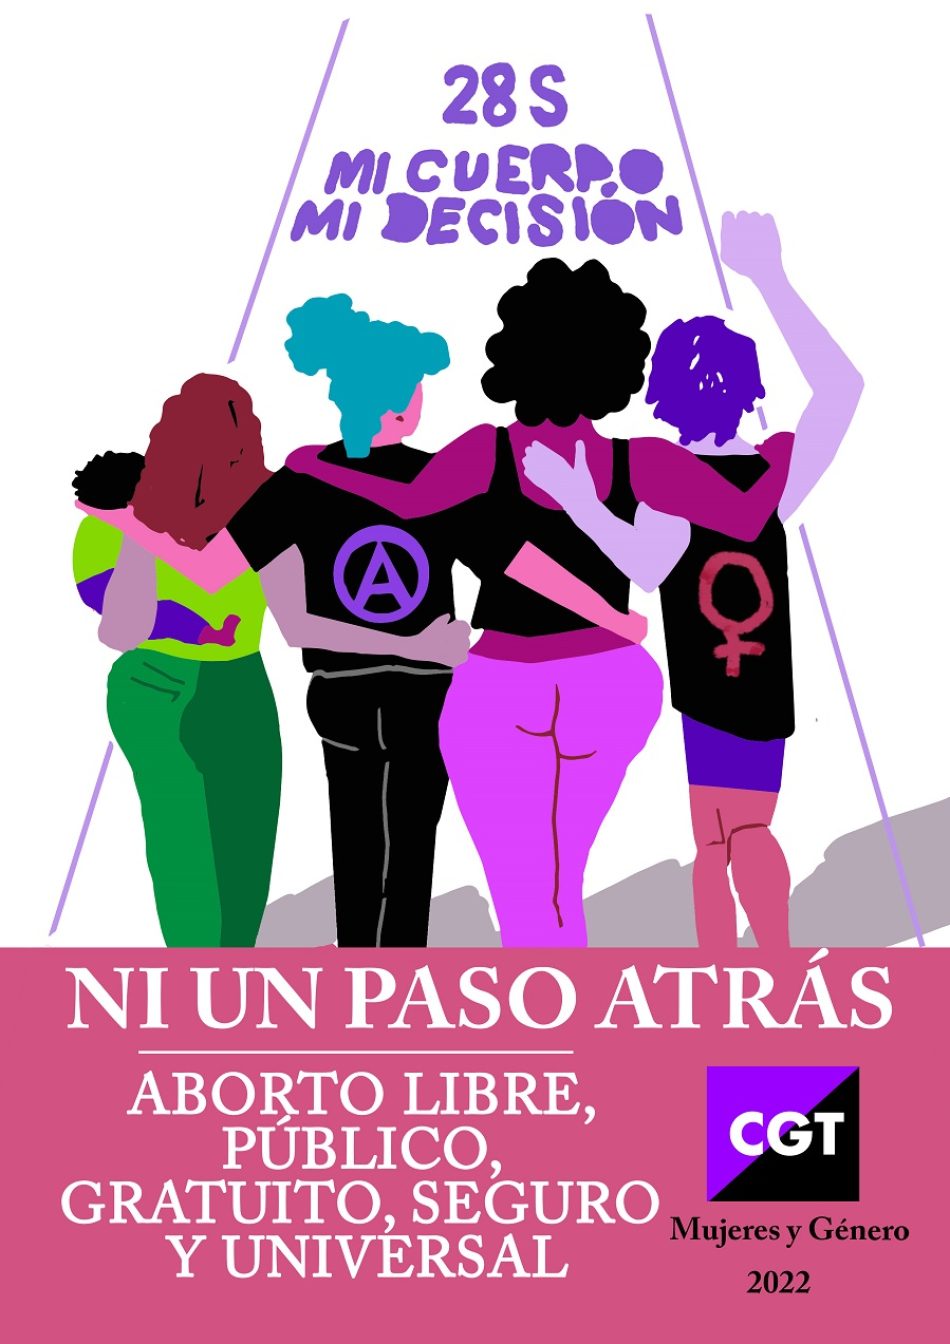 CGT vuelve a defender el aborto libre, público, gratuito, seguro y universal  como un derecho fundamental de las mujeres a decidir sobre su propio cuerpo